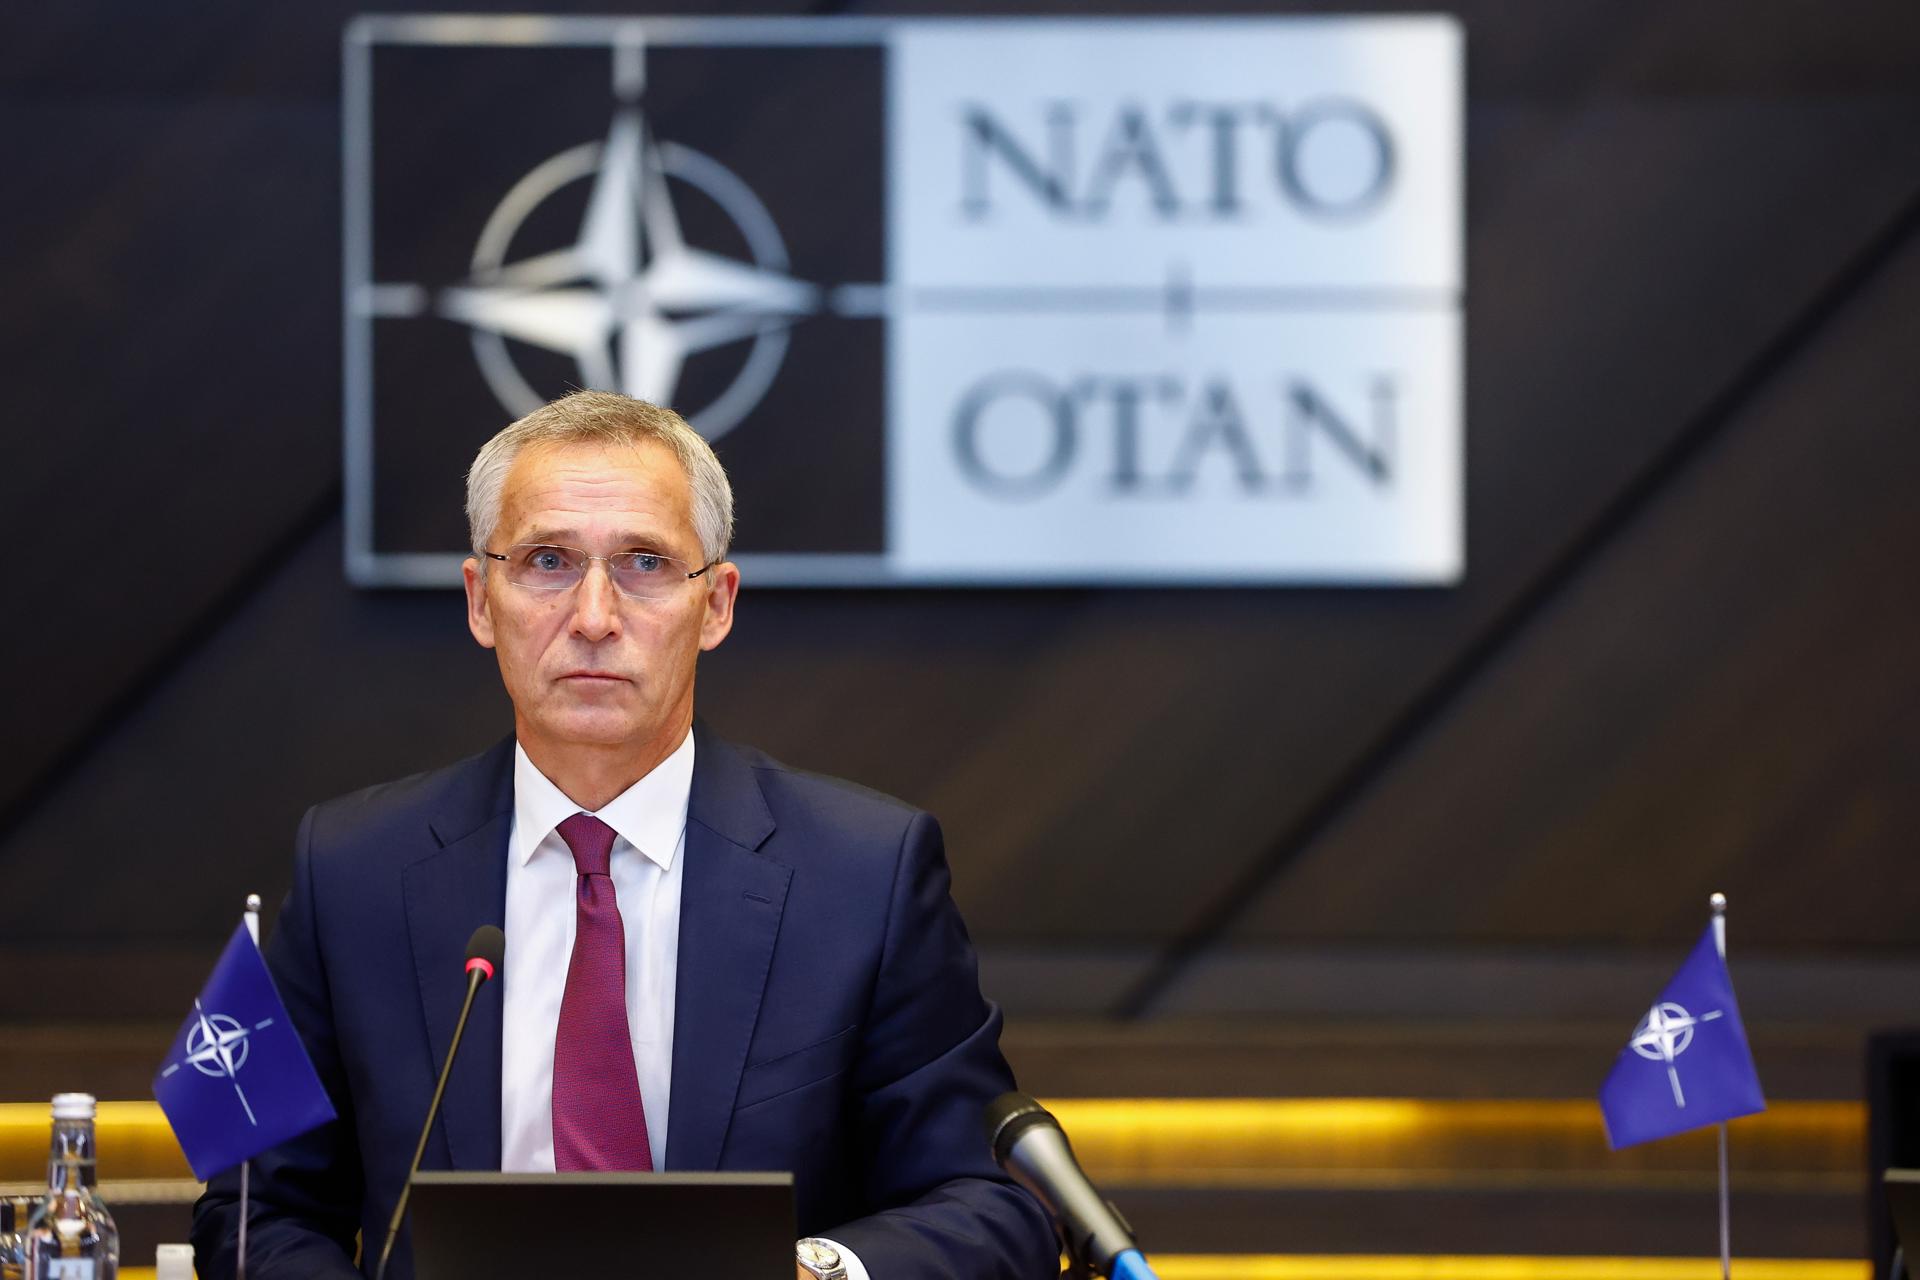 OTAN: Comentarios de Trump ponen en riesgo vidas de EE.UU. y Europa